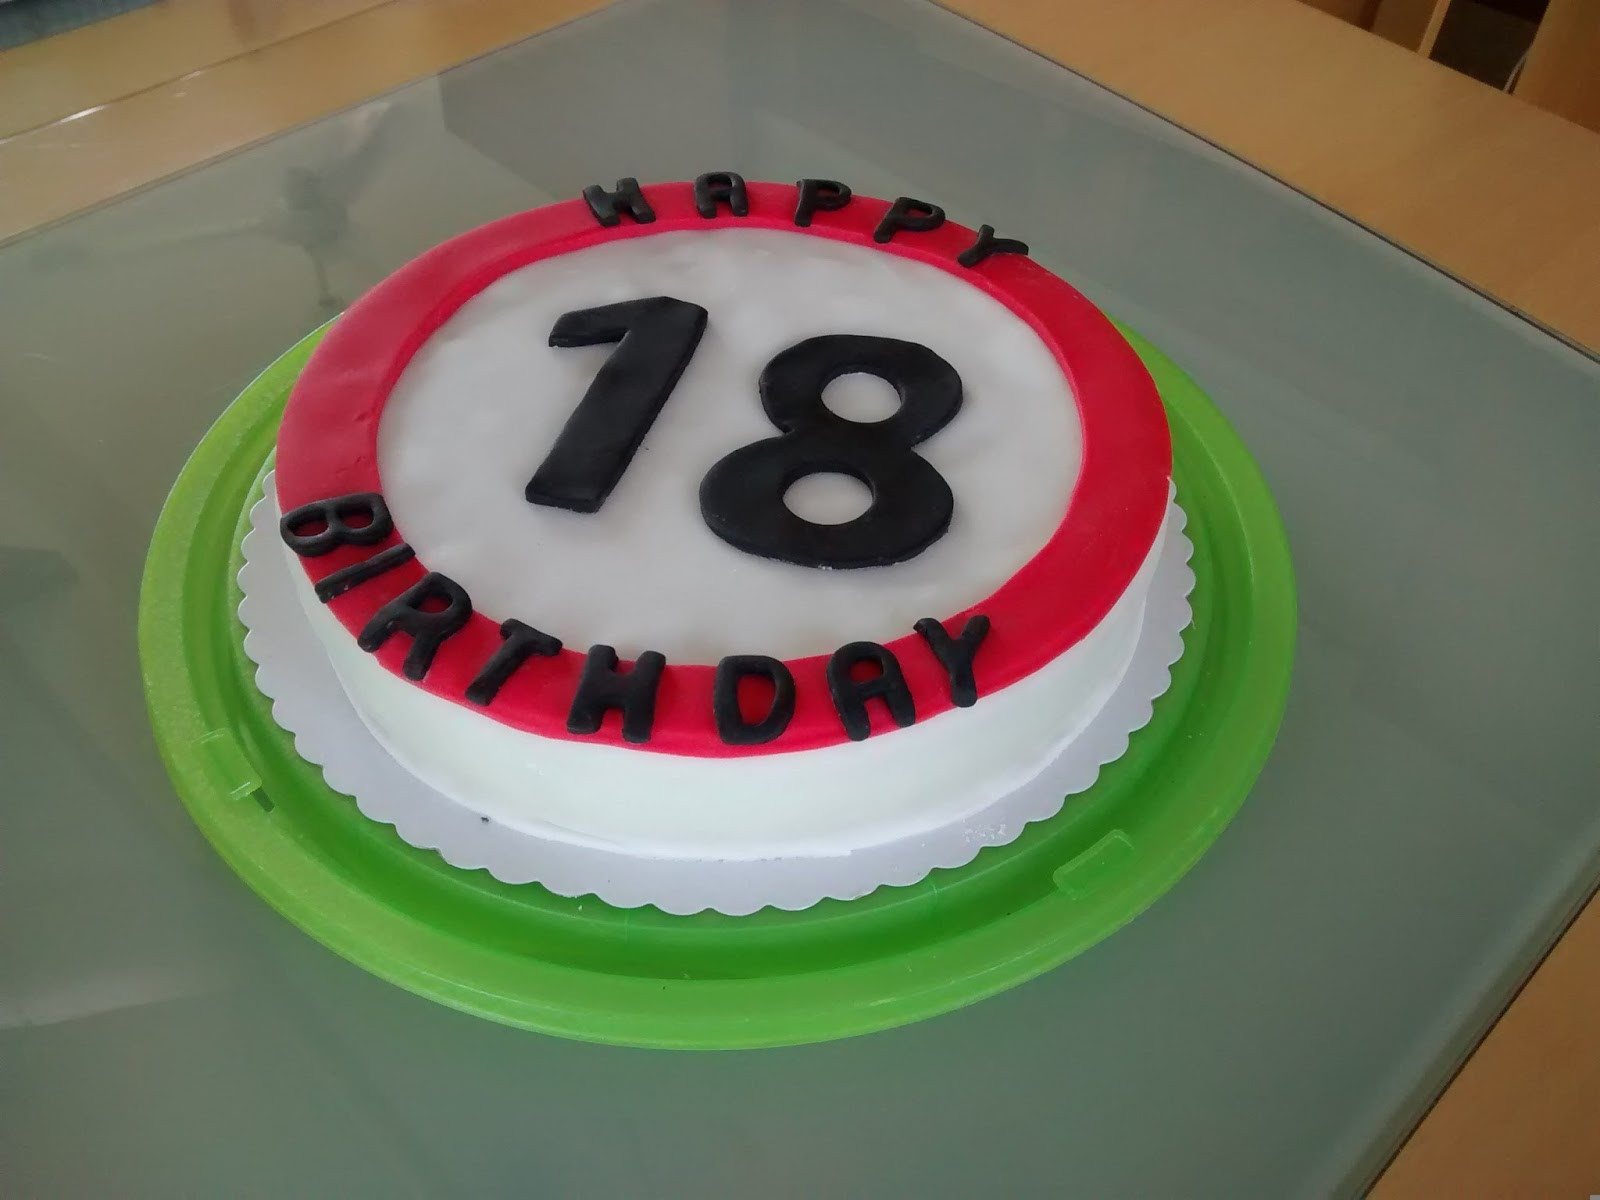 Geburtstagsgeschenk Junge
 Twink e Baking Torte zum 18 Geburtstag